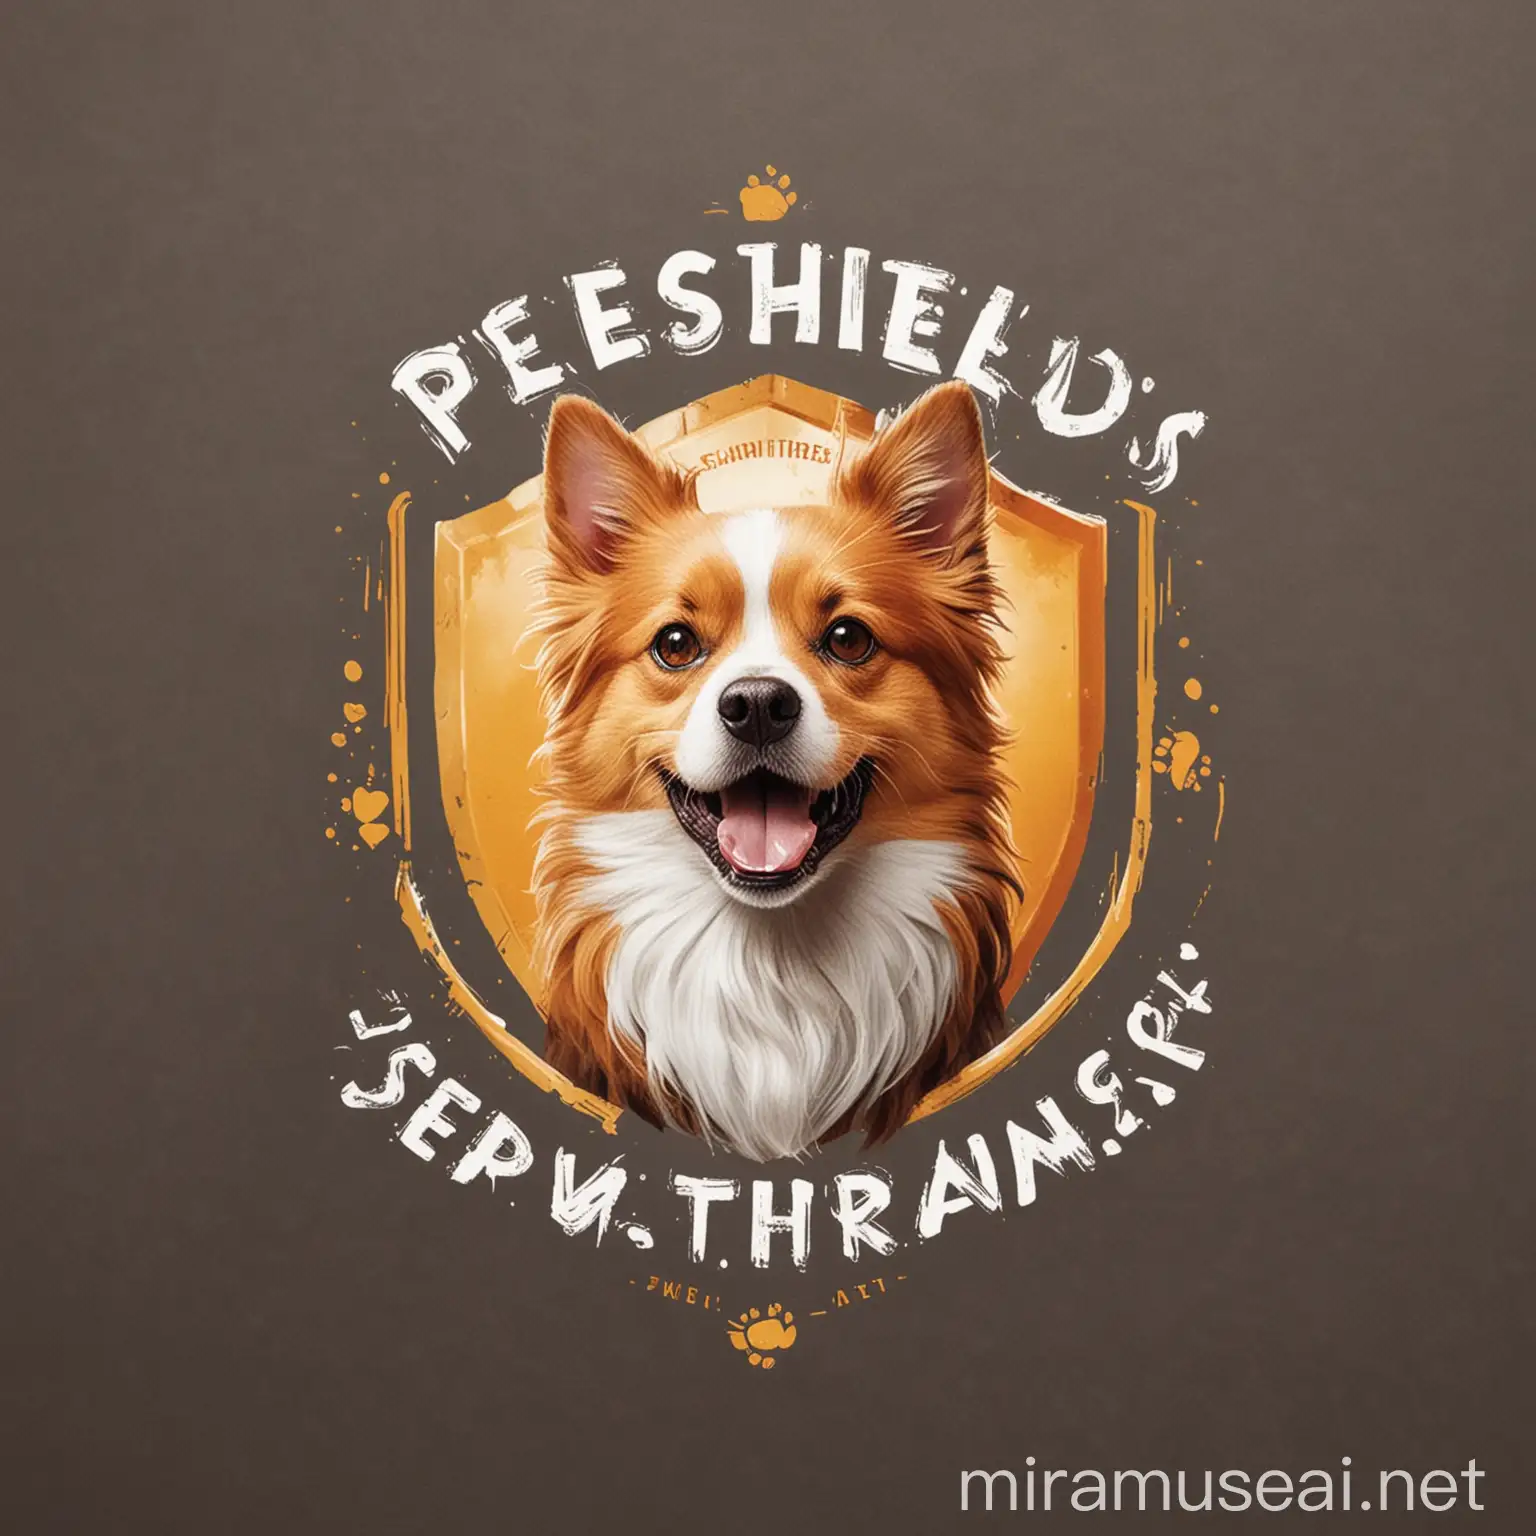 Ein Logo für eine Haustier Versicherung, sie heißt PetShield und hat den Slogan „safety first, Happiness Fur- ever!“